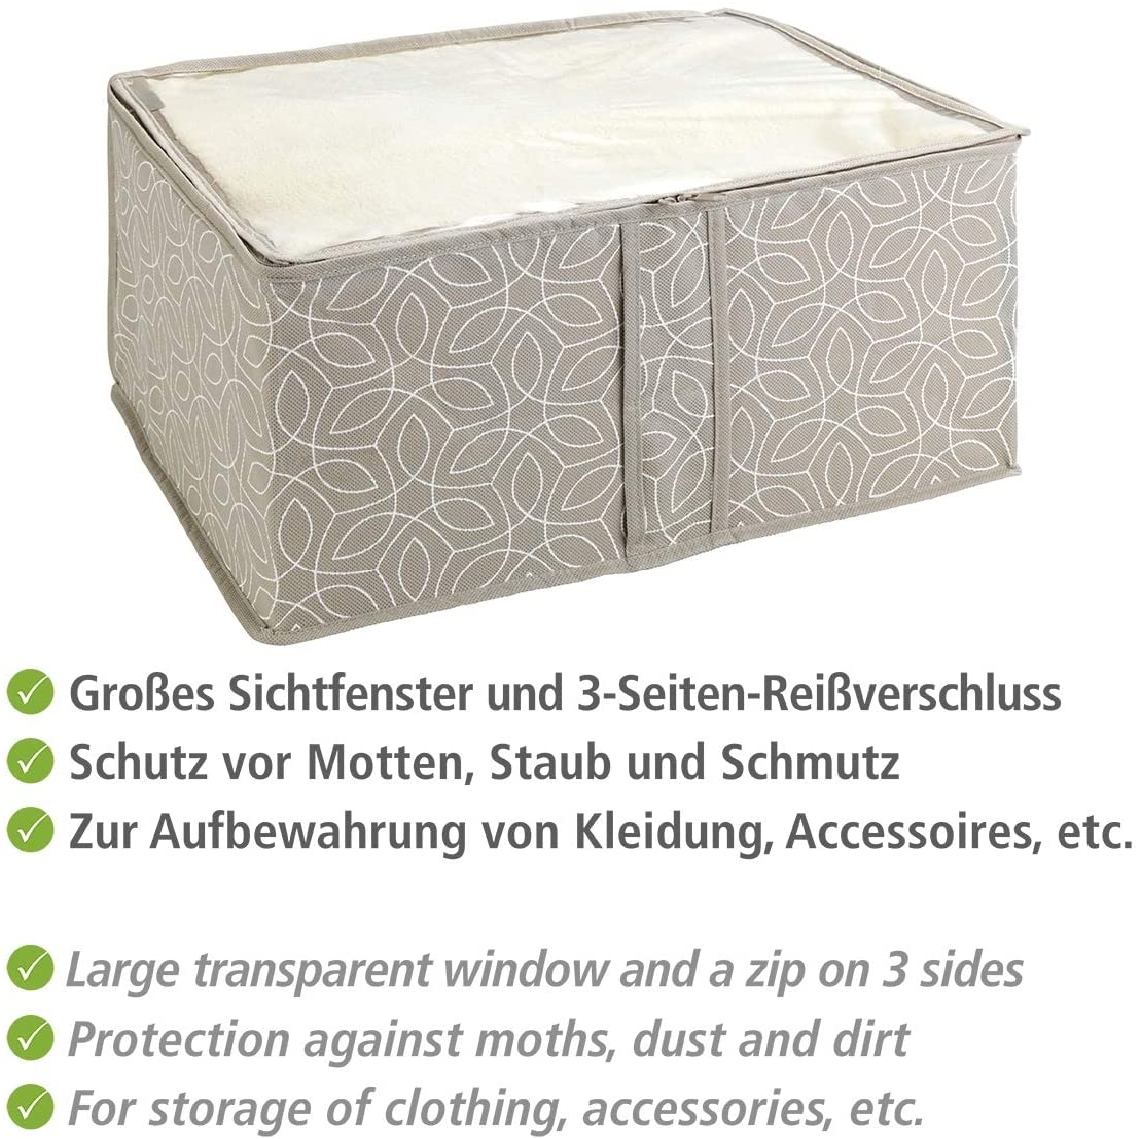 Aufbewahrungs-Soft-Box Balance S - Aufbewahrungsbox mit Sichtfenster, Polypropylen, 30 x 20 x 40 cm, Taupe